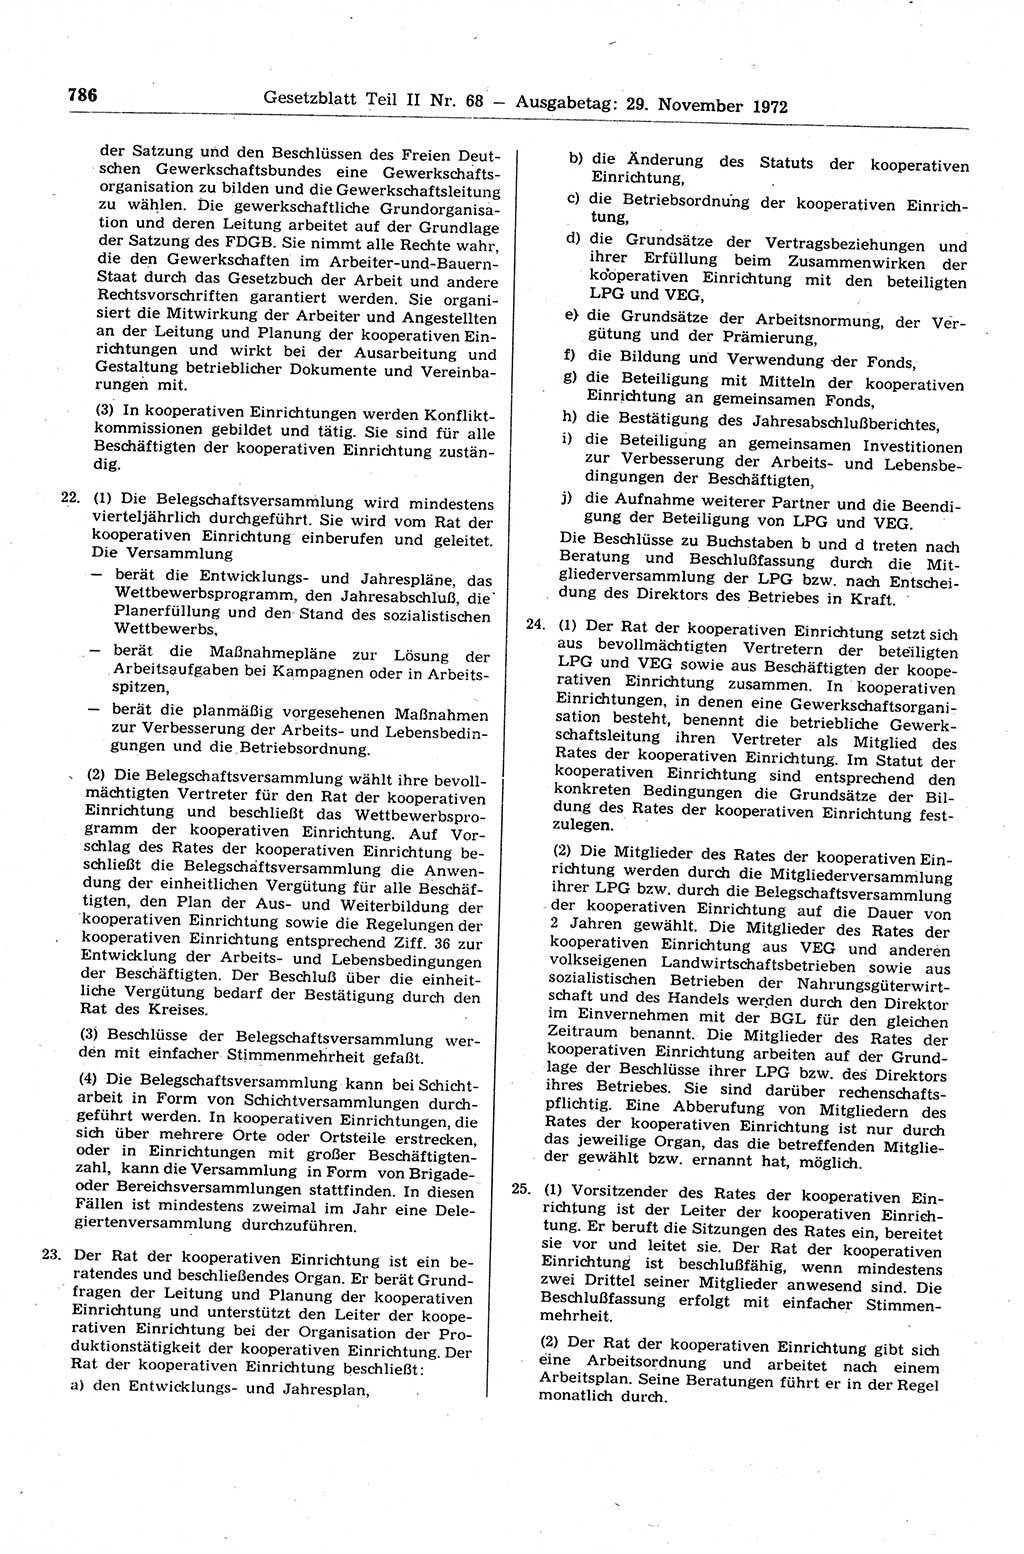 Gesetzblatt (GBl.) der Deutschen Demokratischen Republik (DDR) Teil ⅠⅠ 1972, Seite 786 (GBl. DDR ⅠⅠ 1972, S. 786)